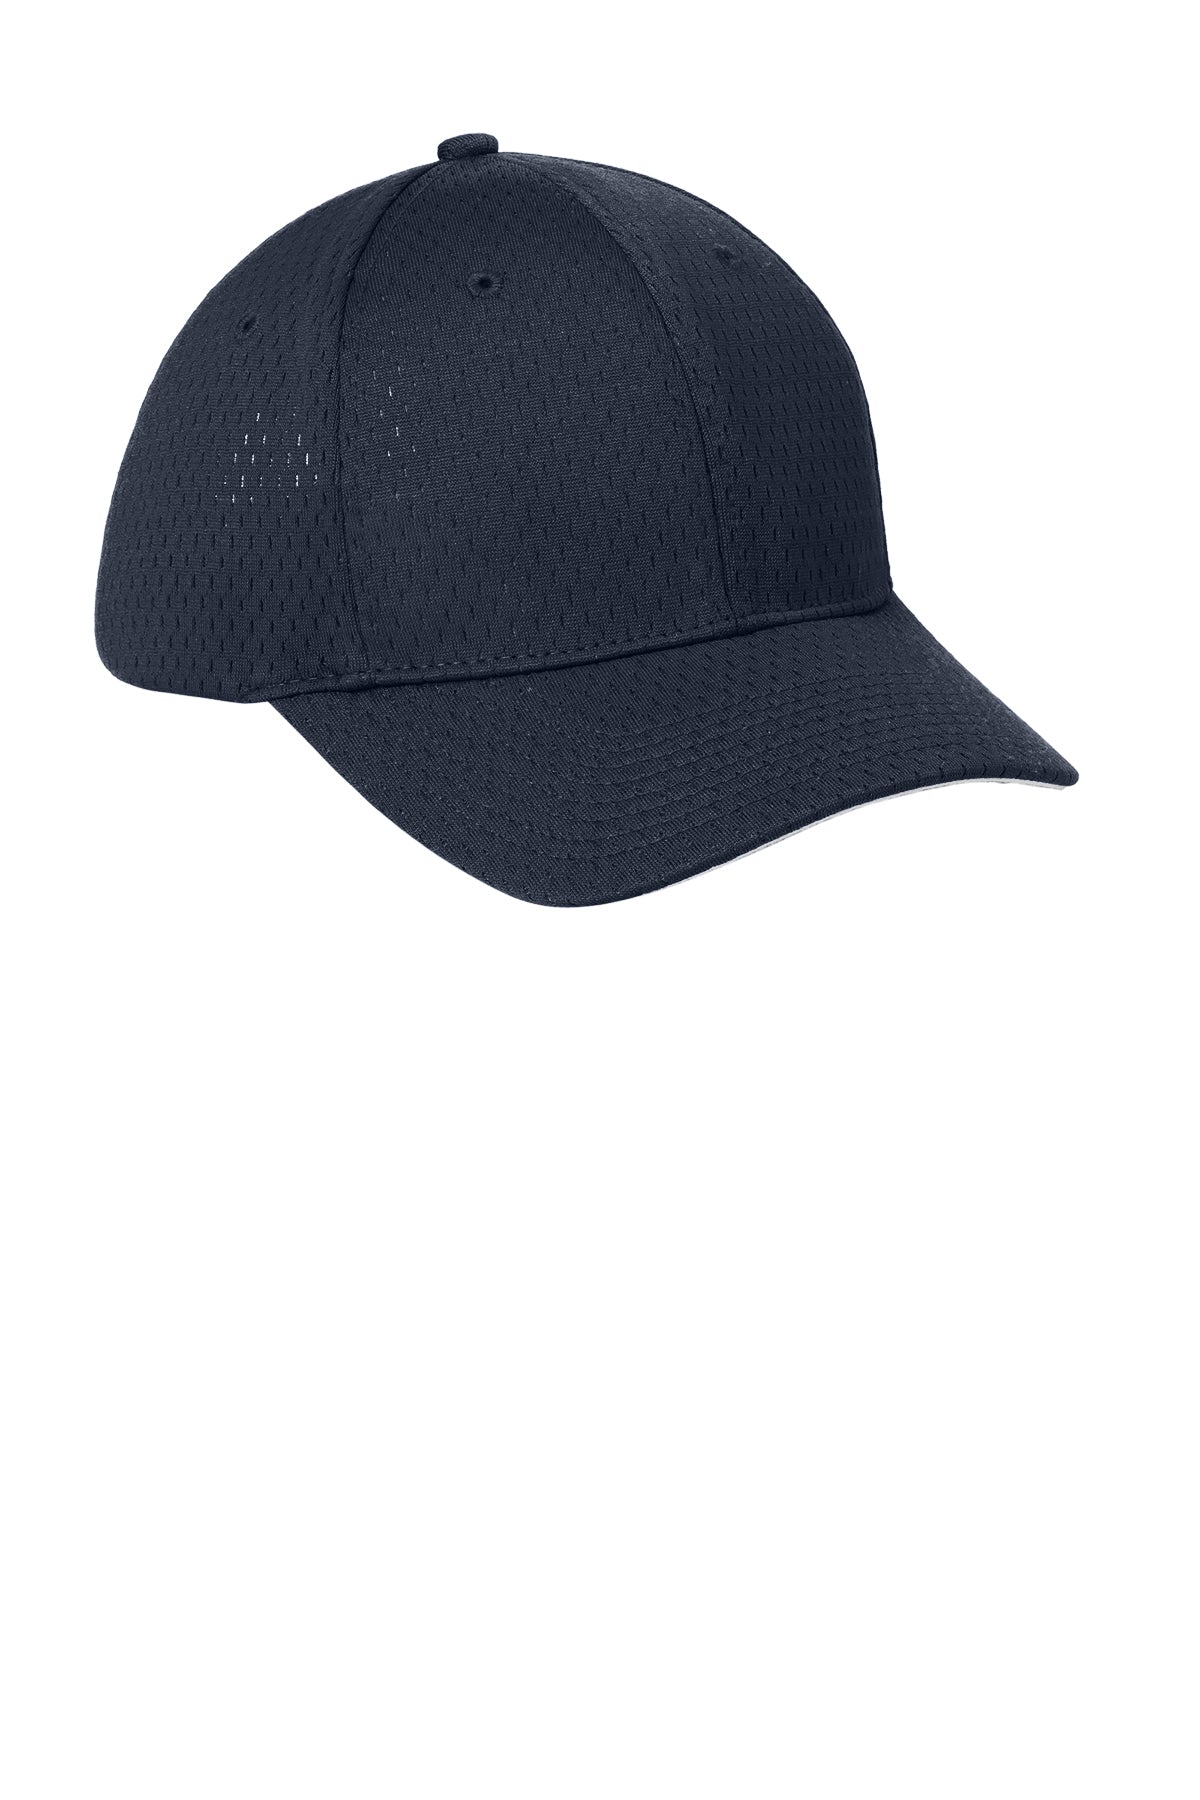 Port Authority Pro Mesh Branded Caps, Navy